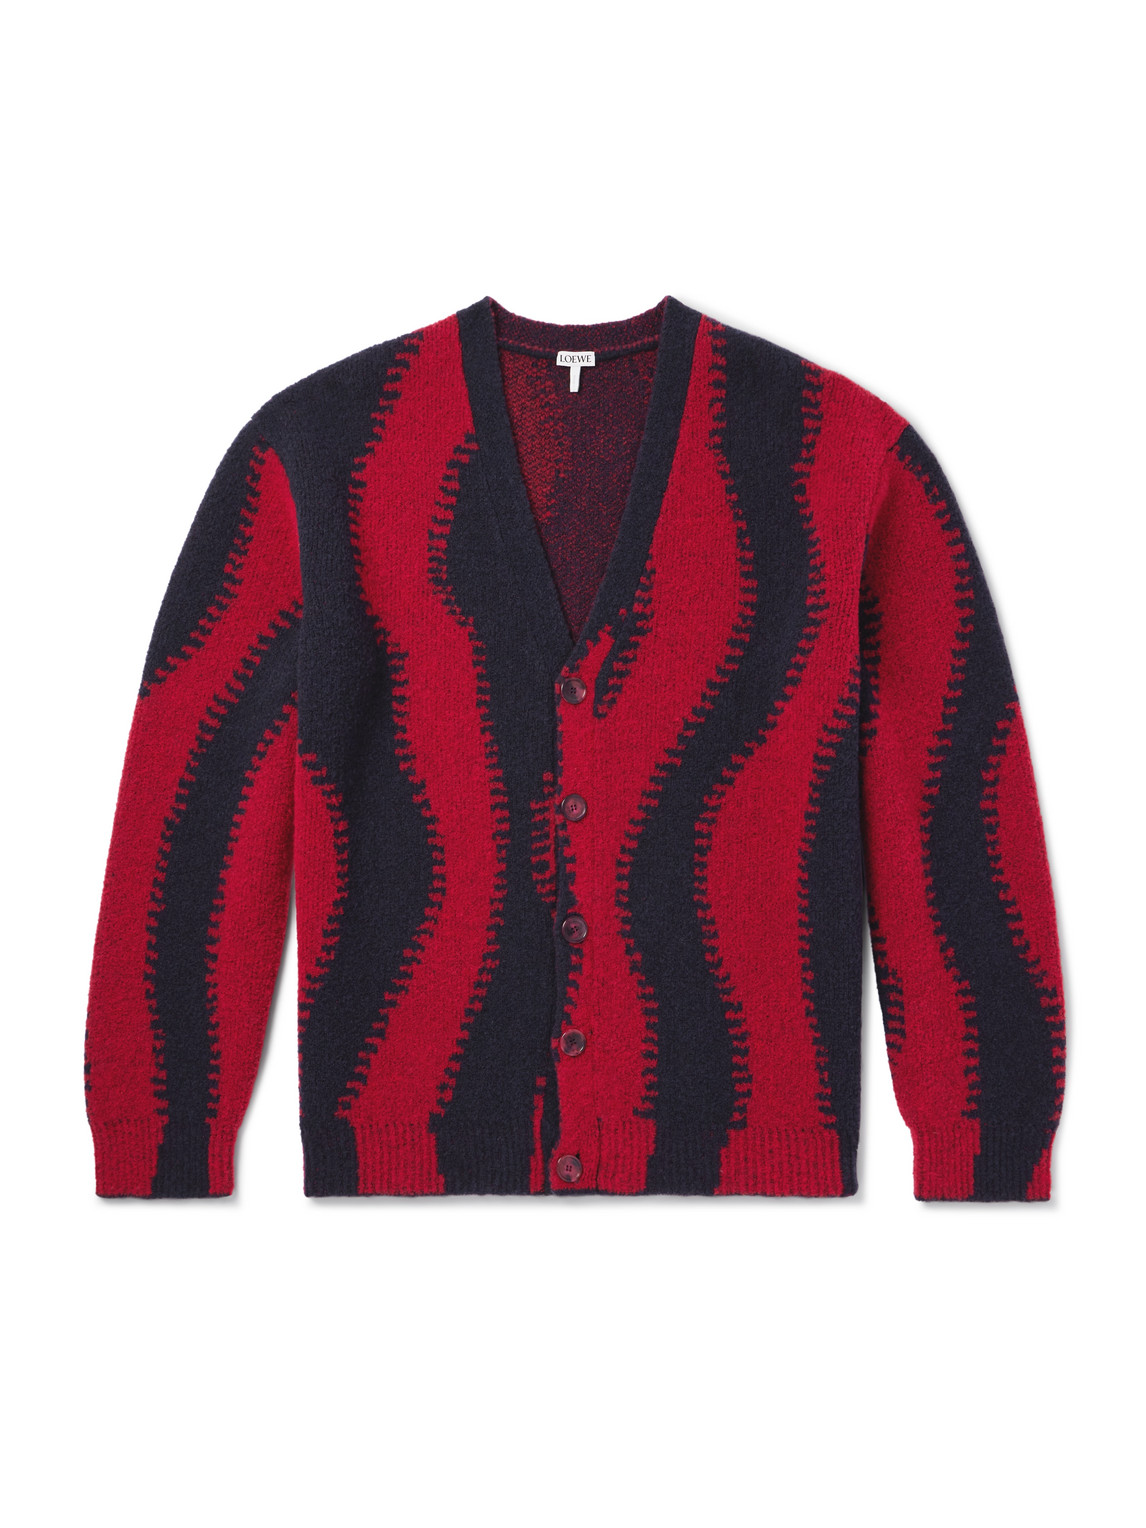 LOEWE - Jacquard-Knit Wool-Blend Cardigan - Men - Red - M von LOEWE